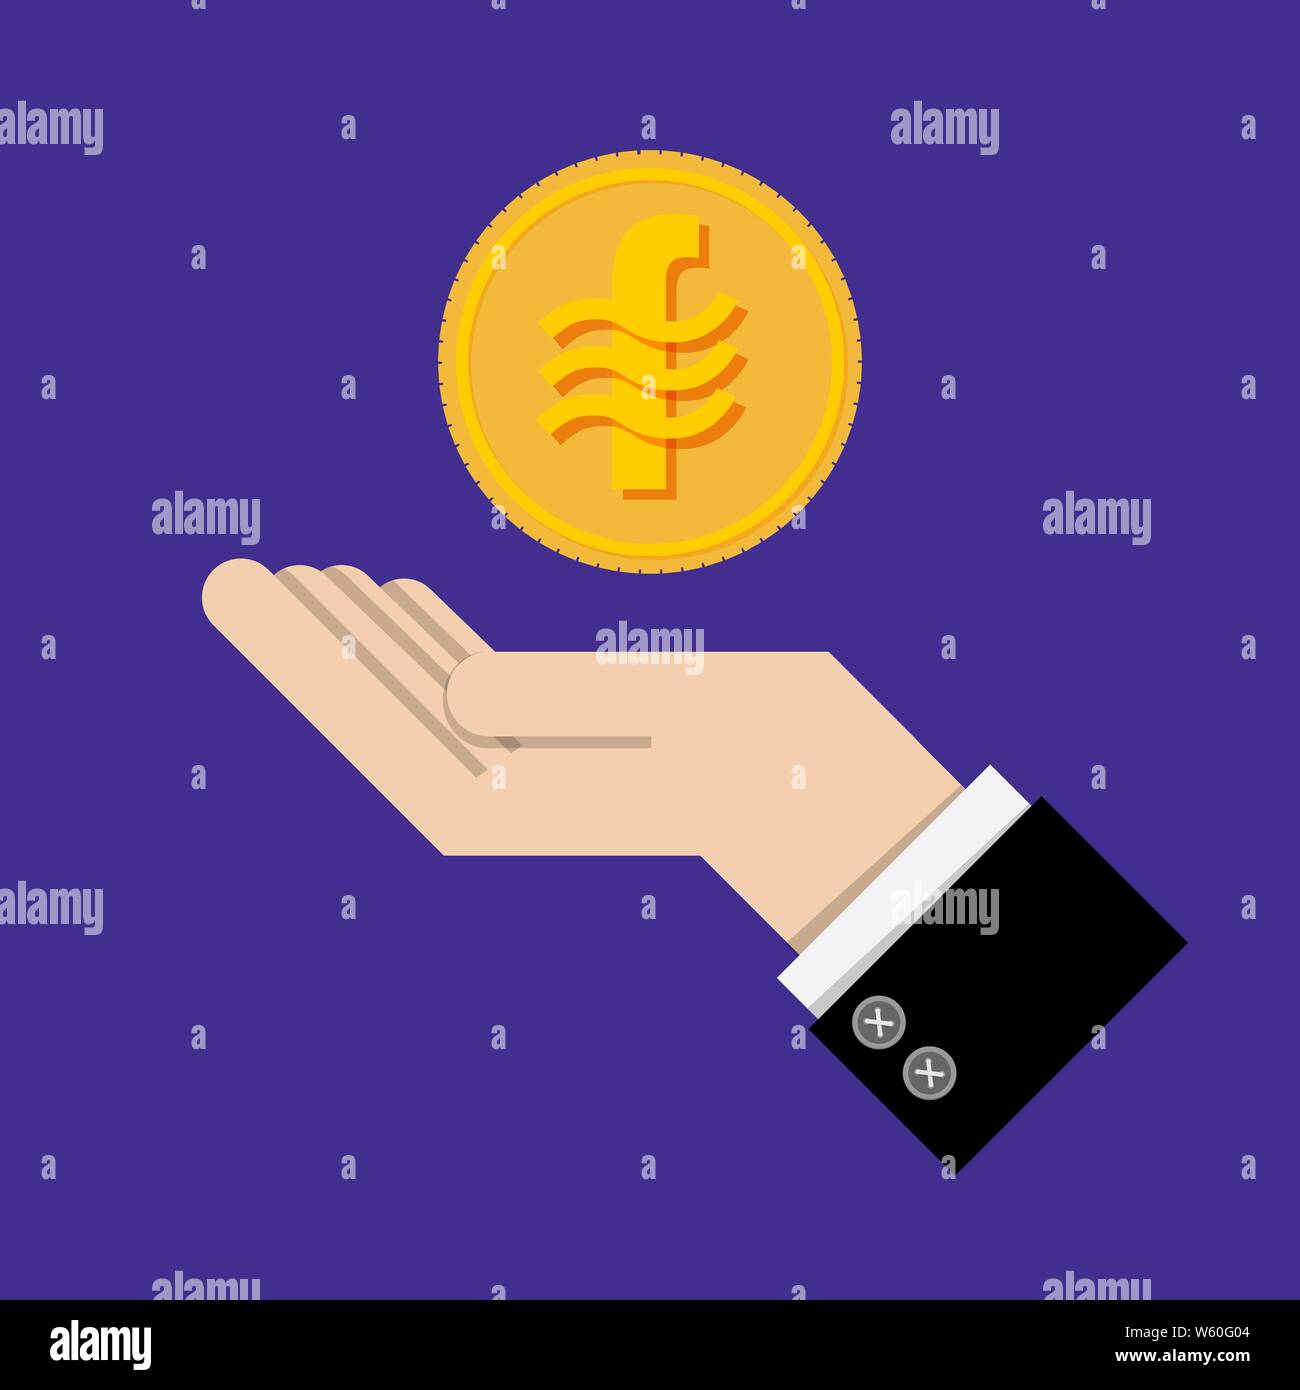 Rendite Konzept. Goldmünze mit Zeichen Waage Münze Währung auf Hand, Palm von Geschäftsmann. Wachstum investieren, Finanzen planen, persönliches Management, Stock Vektor